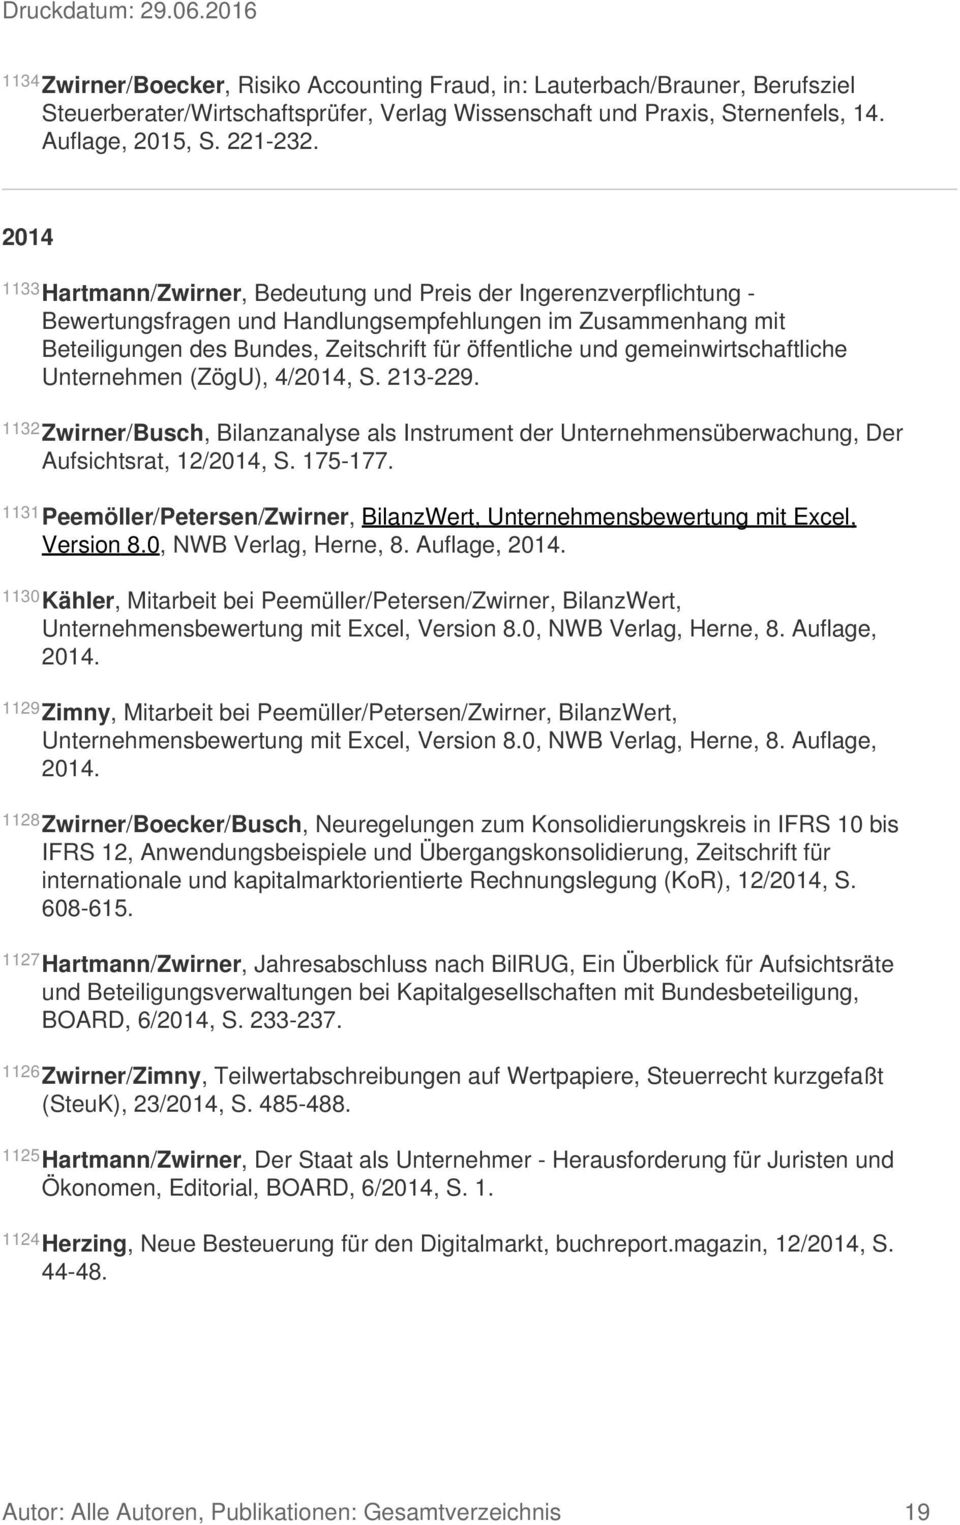 gemeinwirtschaftliche Unternehmen (ZögU), 4/2014, S. 213-229. 1132 Zwirner/Busch, Bilanzanalyse als Instrument der Unternehmensüberwachung, Der Aufsichtsrat, 12/2014, S. 175-177.